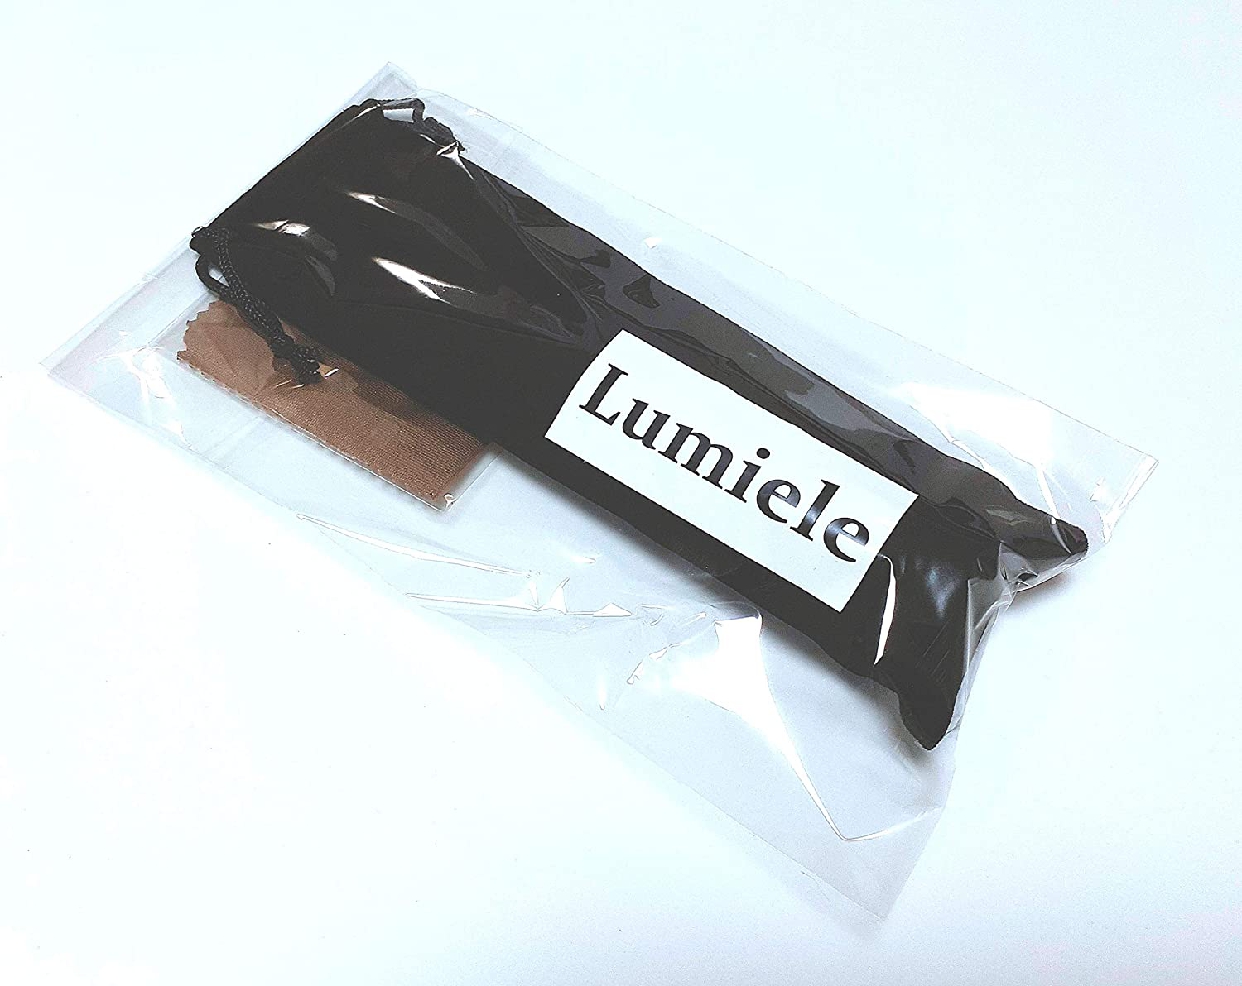 Lumiele(ルミエール) かっさ棒の商品画像6 